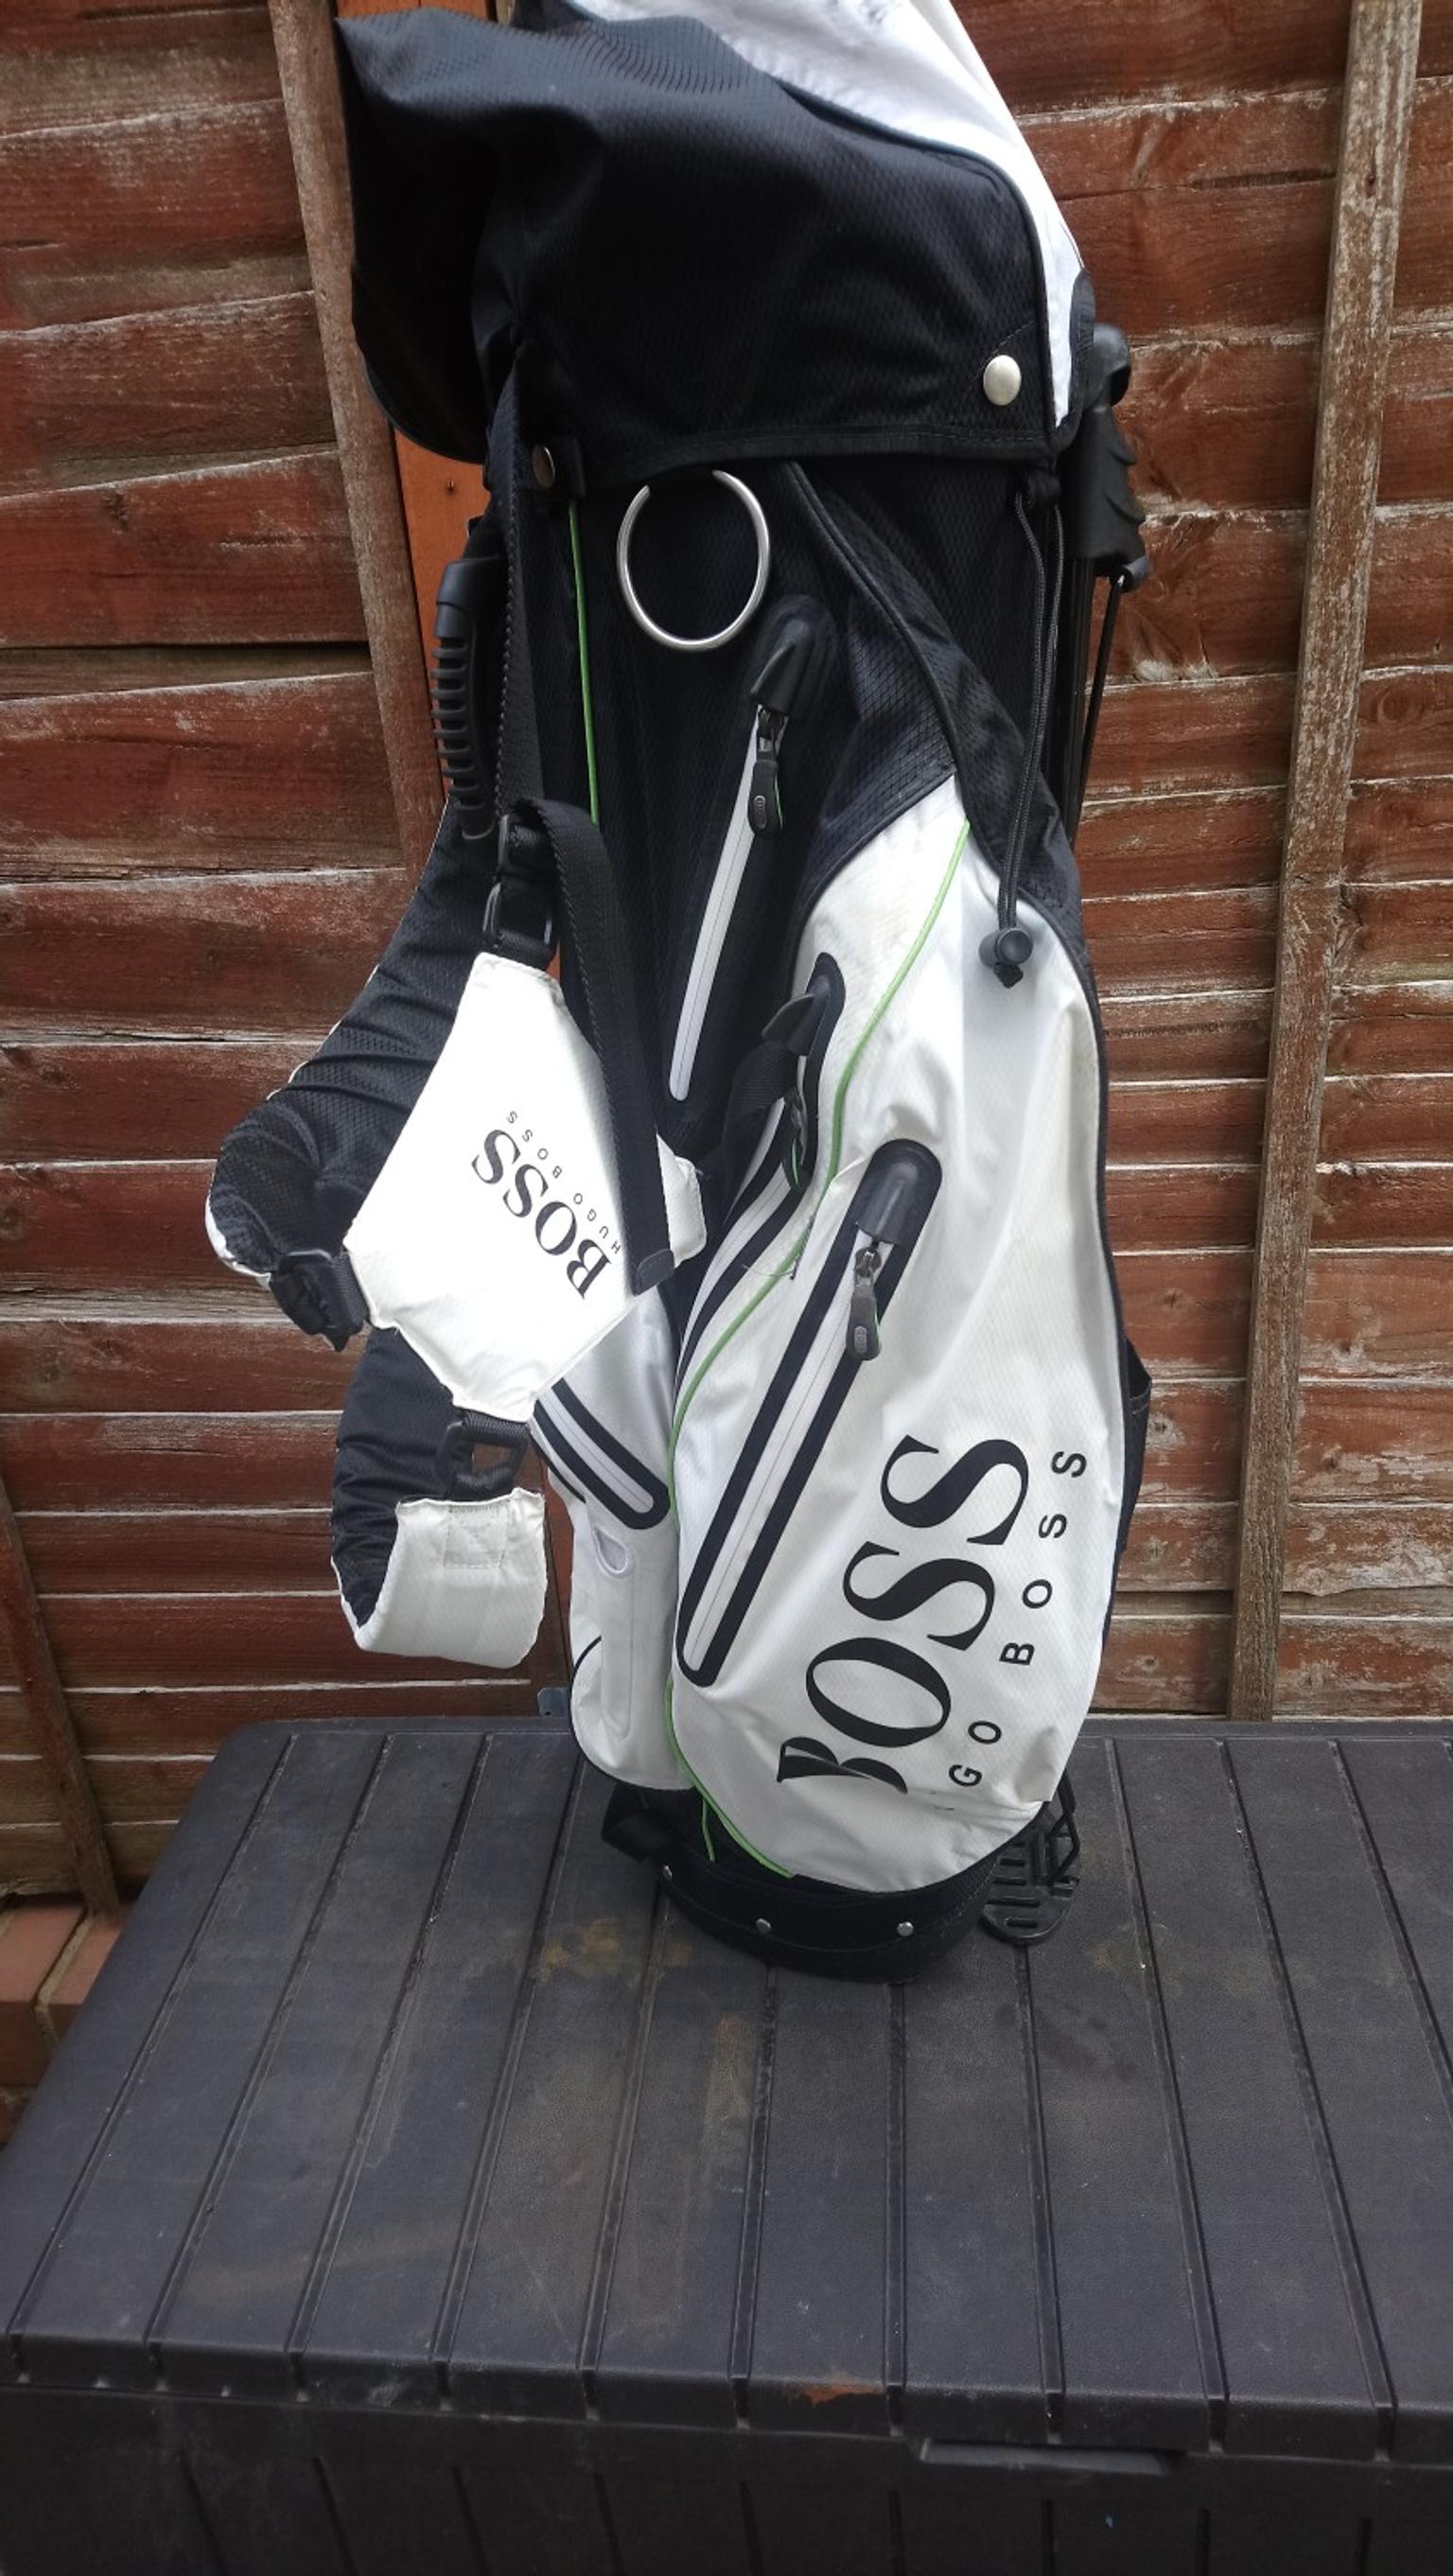 boss golf bag